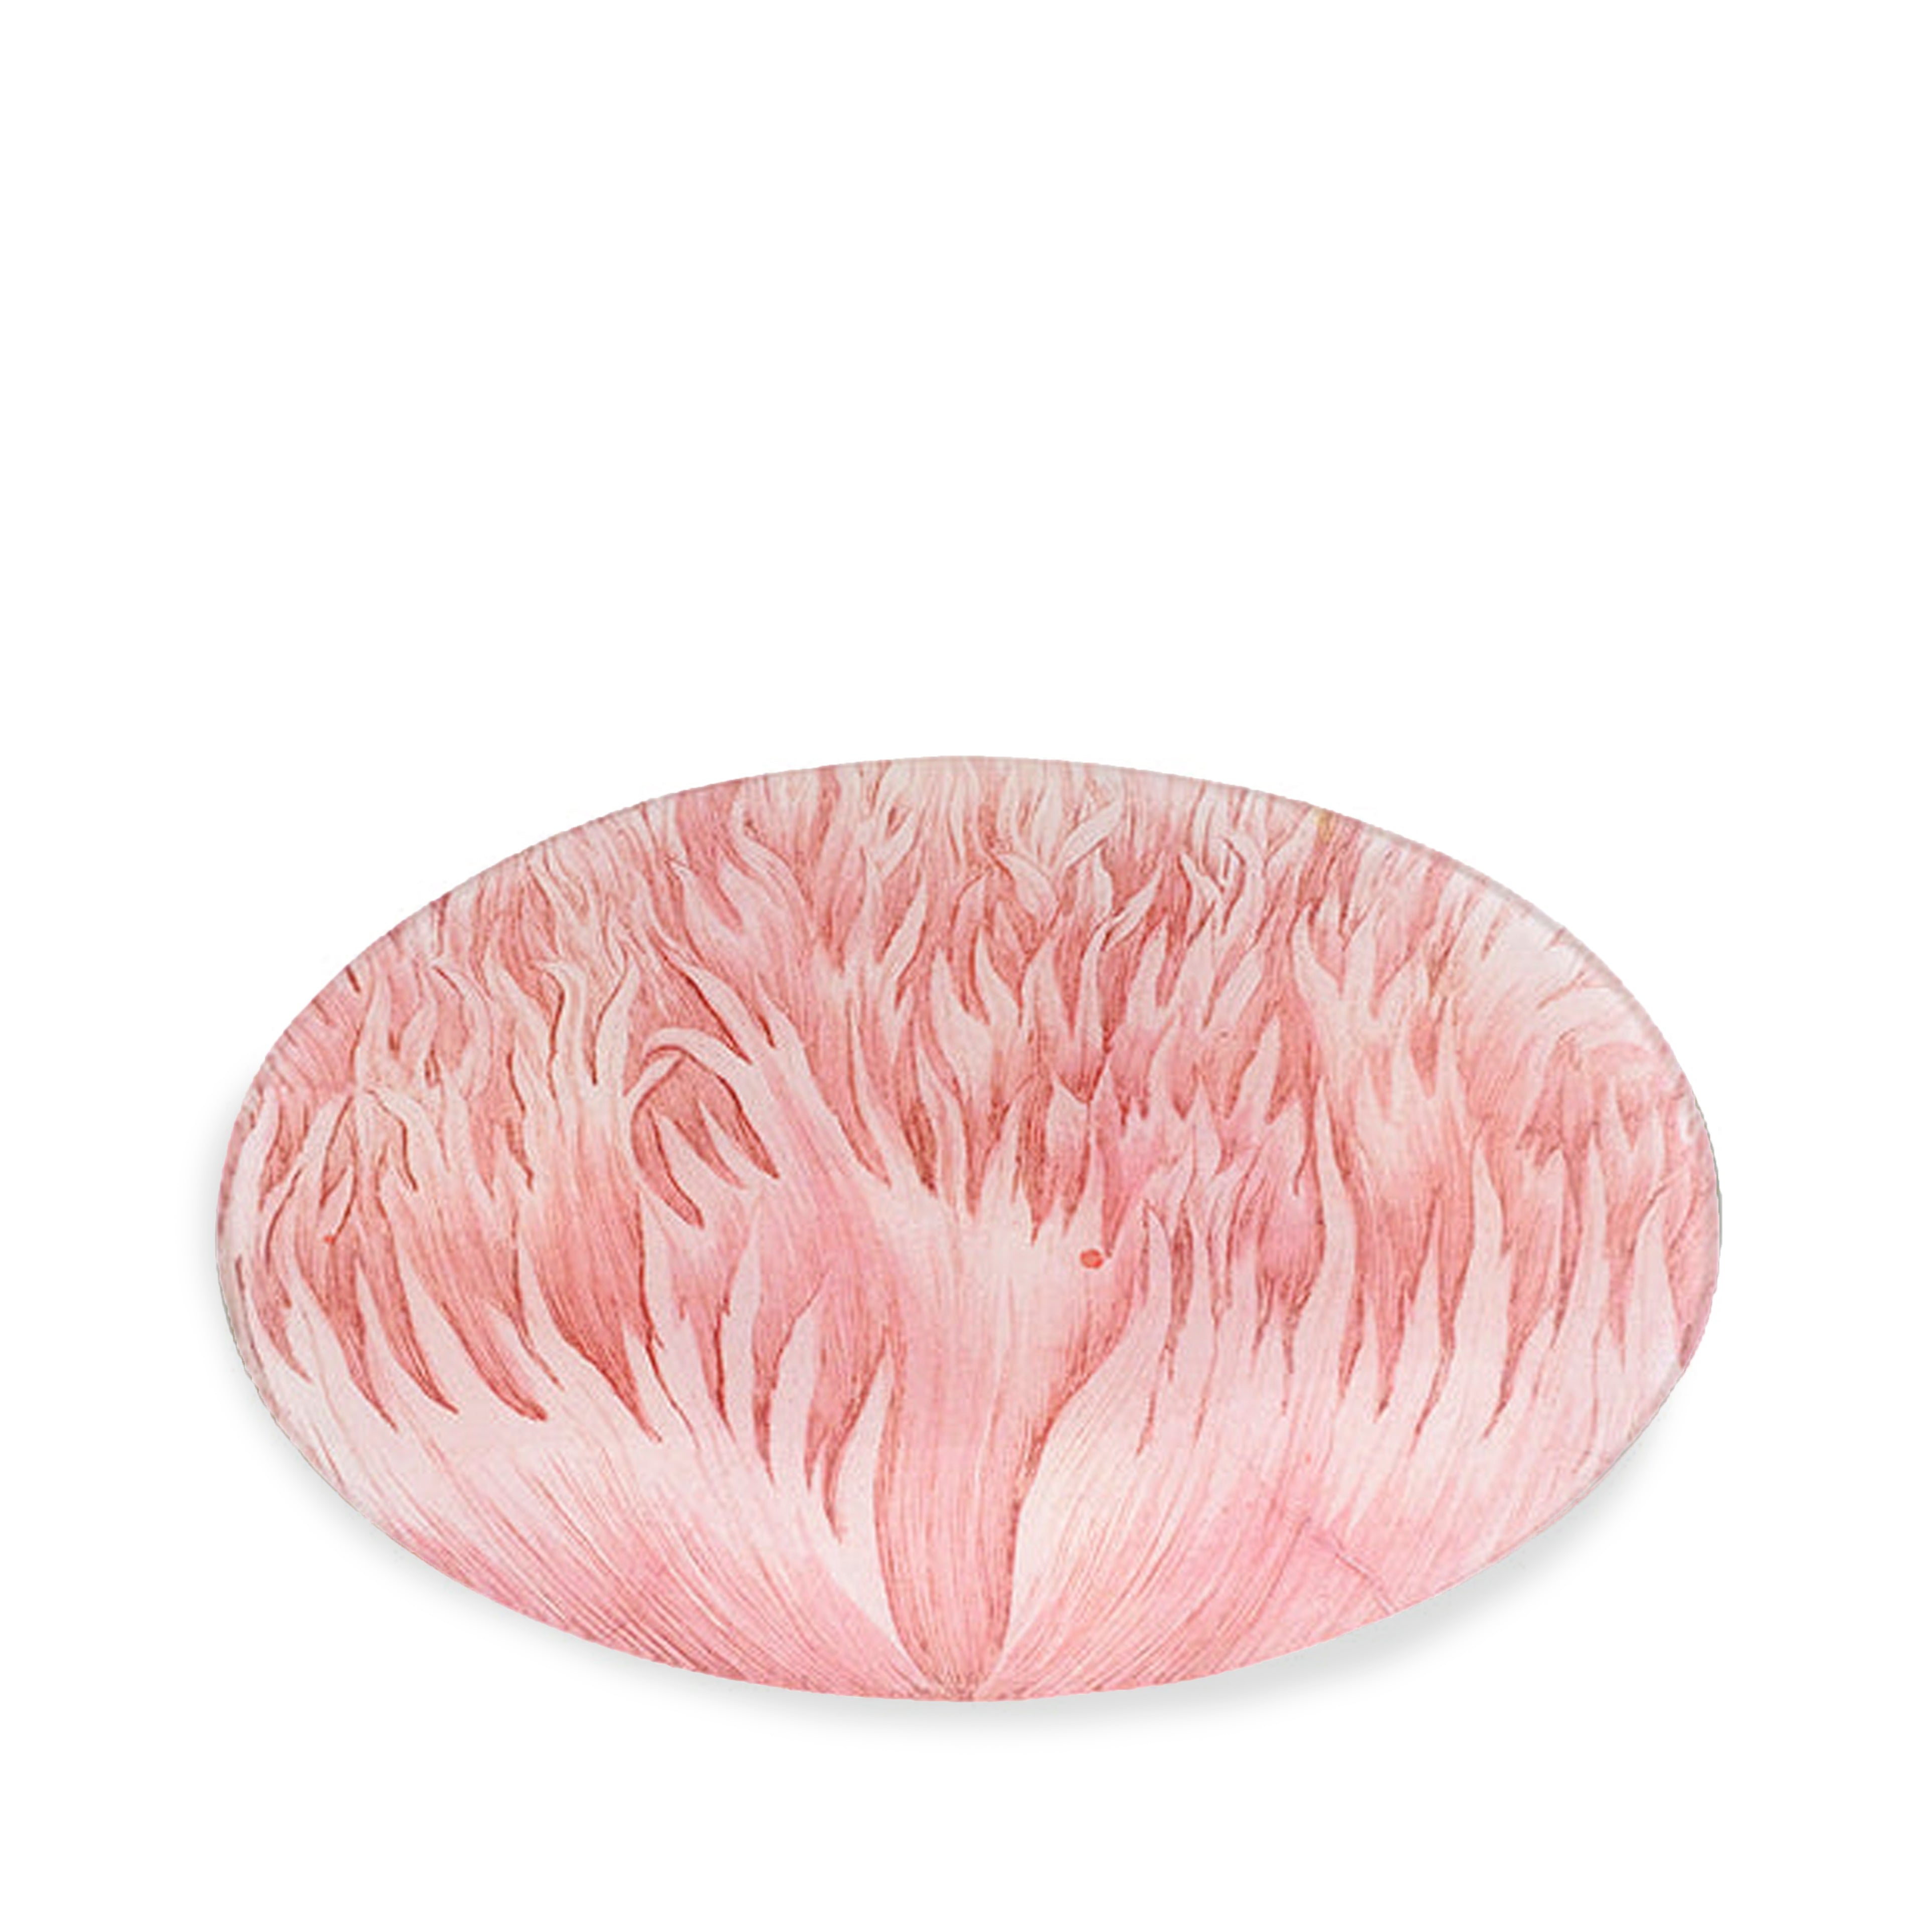 John Derian Pink Crested Poppy Platter, 23x35cm